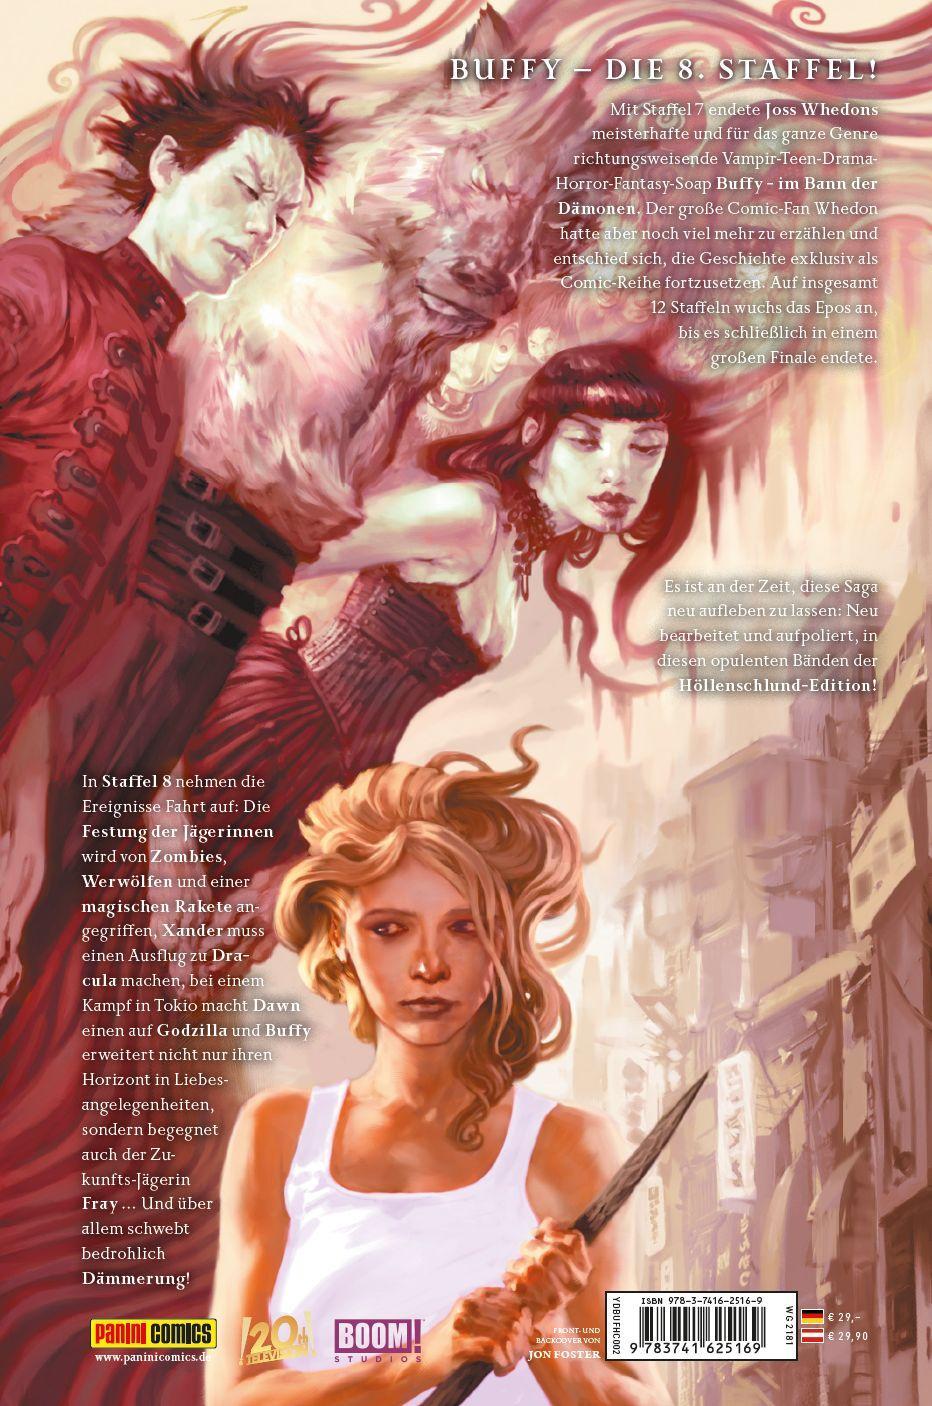 Rückseite: 9783741625169 | Buffy The Vampire Slayer (Staffel 8) Höllenschlund-Edition | Bd. 2